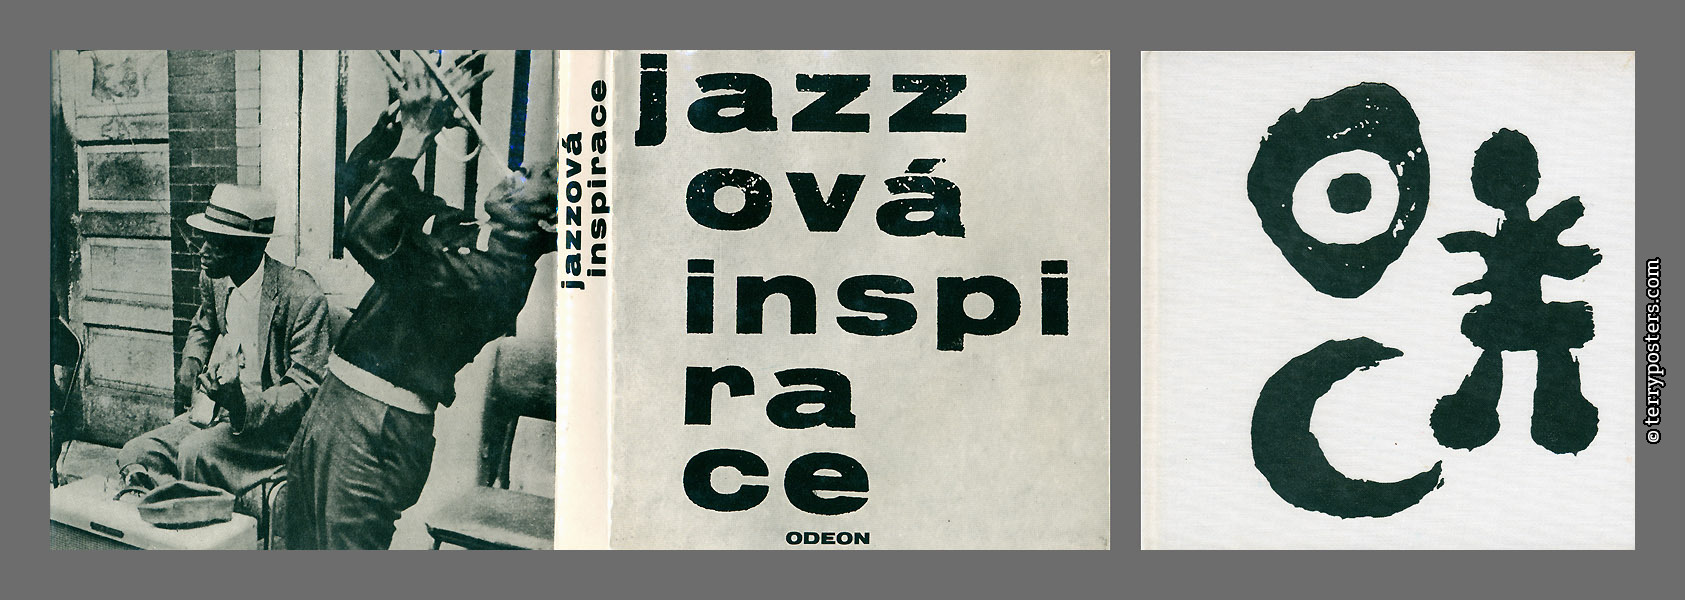 Jazzová inspirace - Odeon; 1966